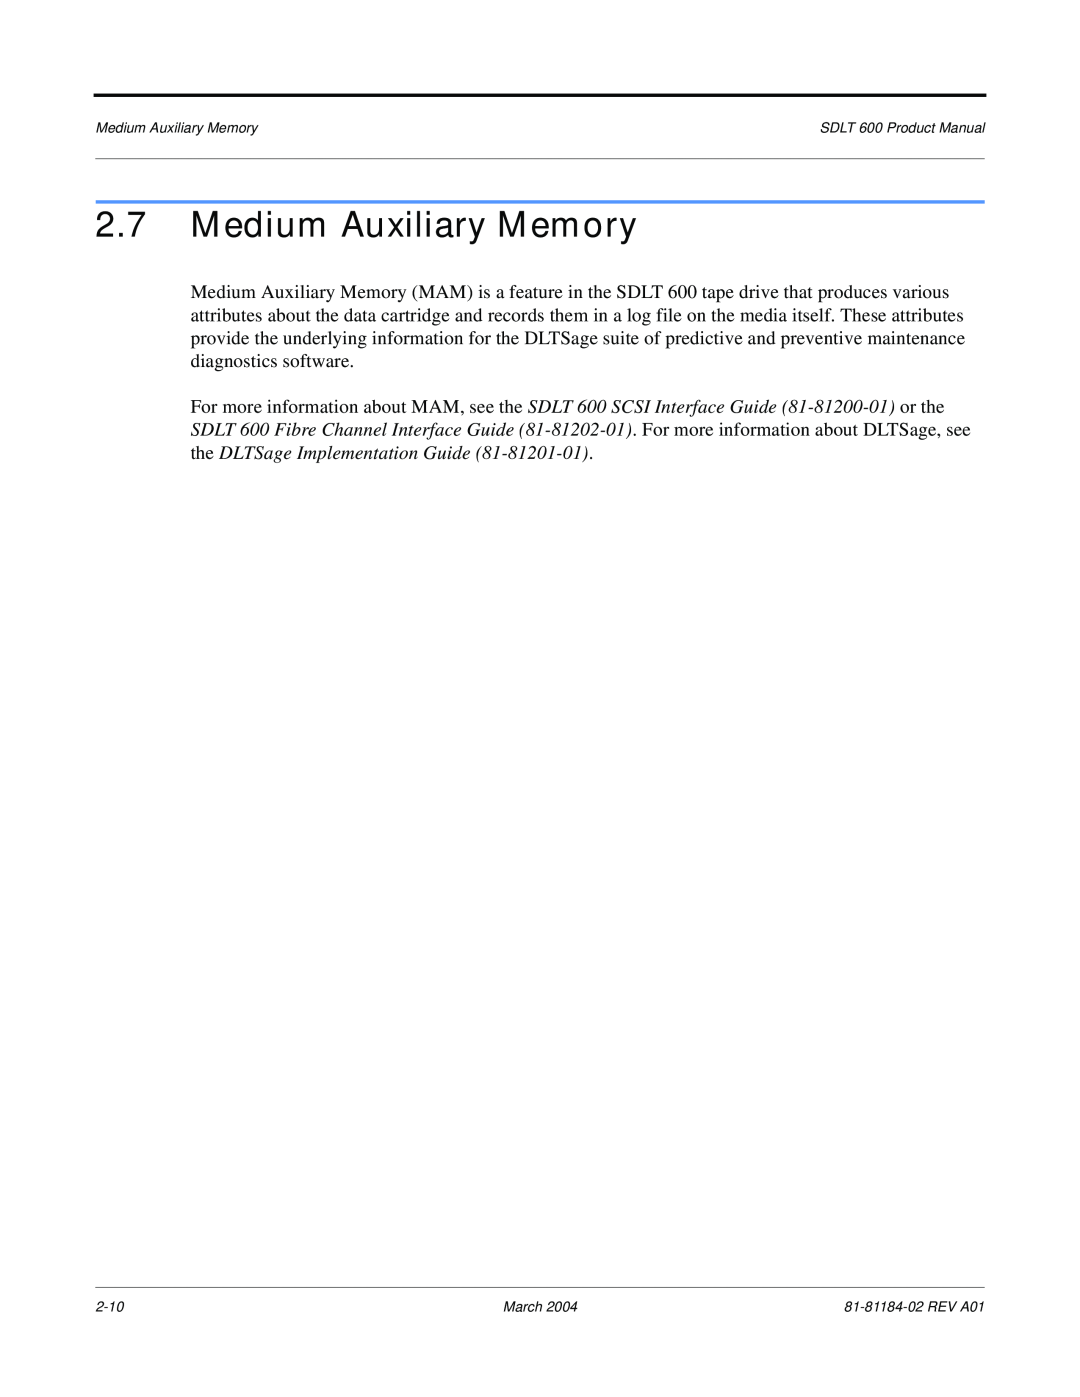 Tandberg Data 600 manual Medium Auxiliary Memory 